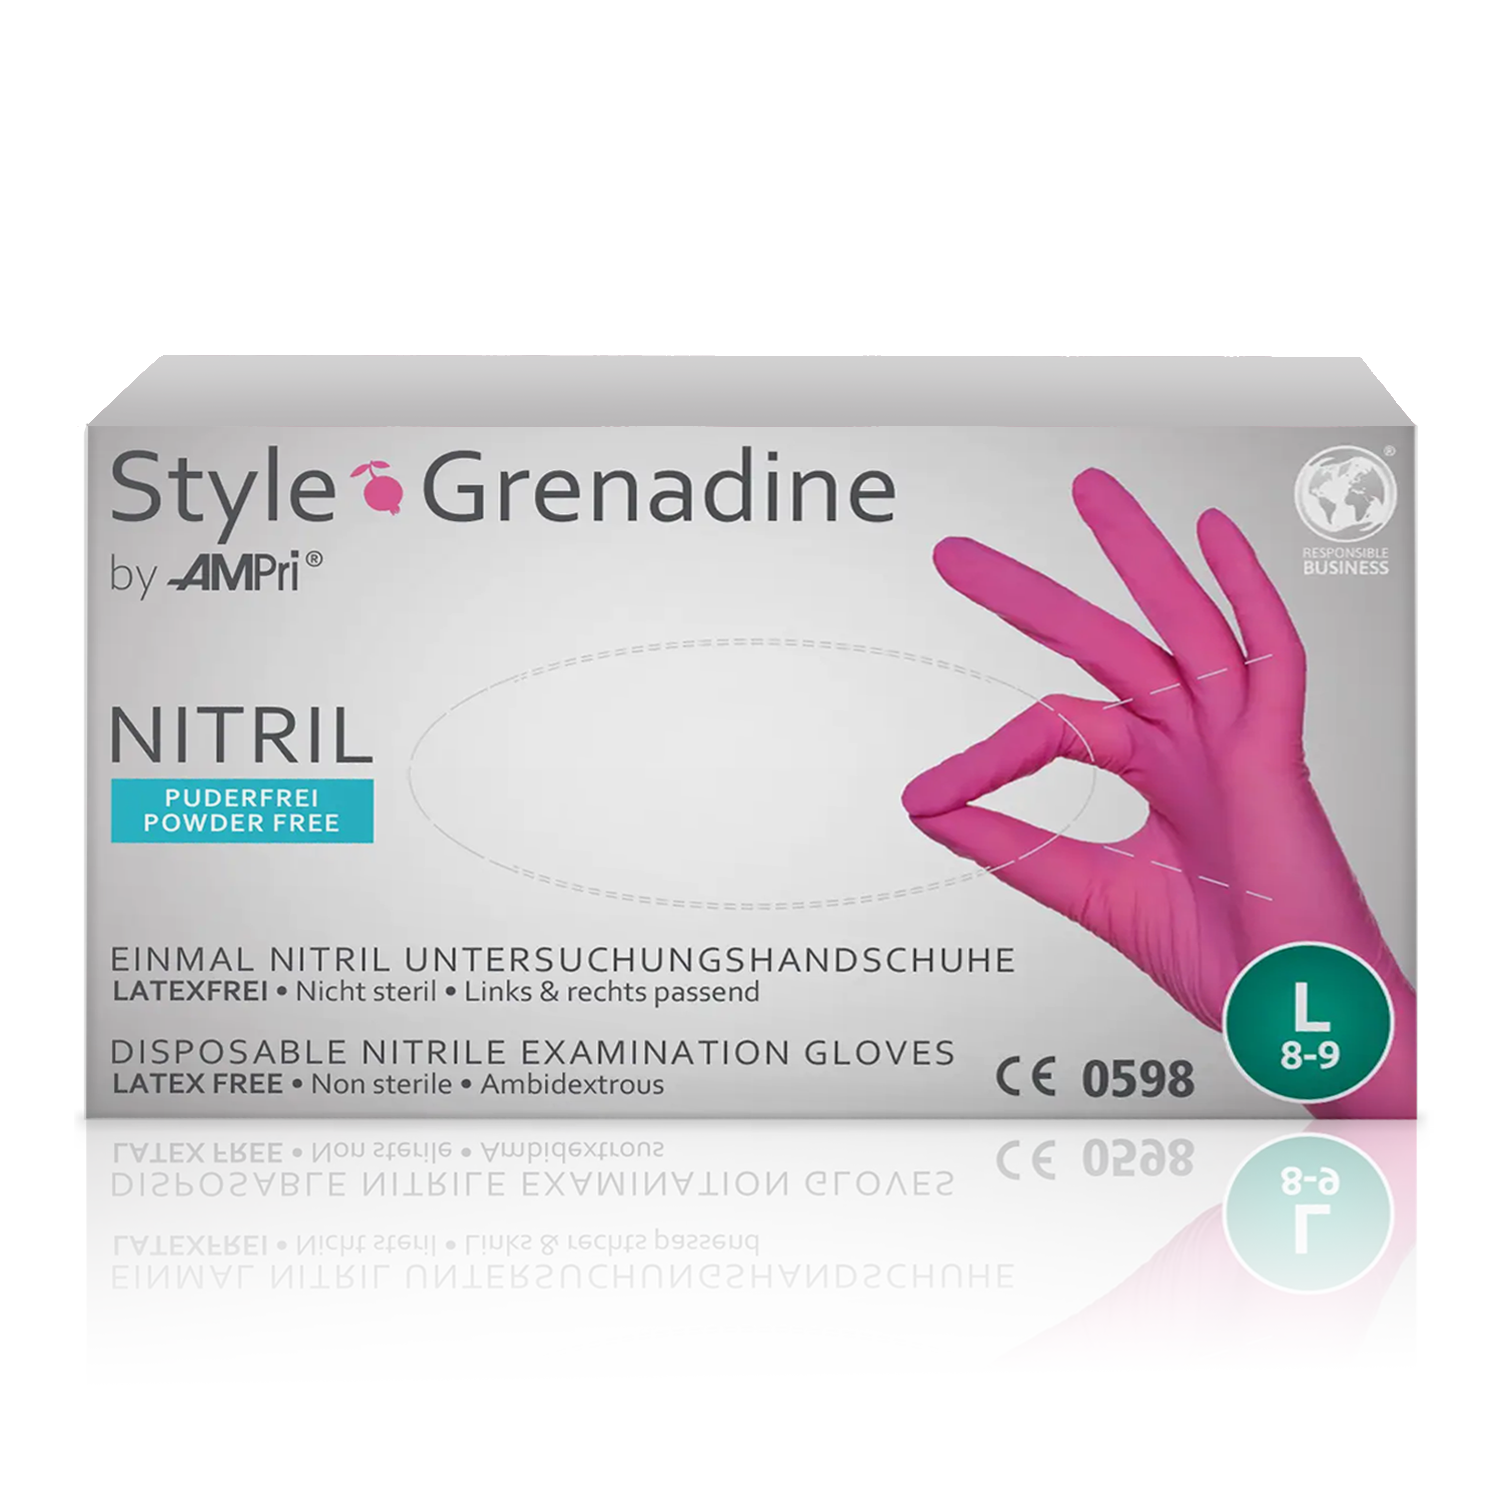 Gratis Muster Nitril Style Grenadine pink Einmalhandschuh latexfrei und puderfrei